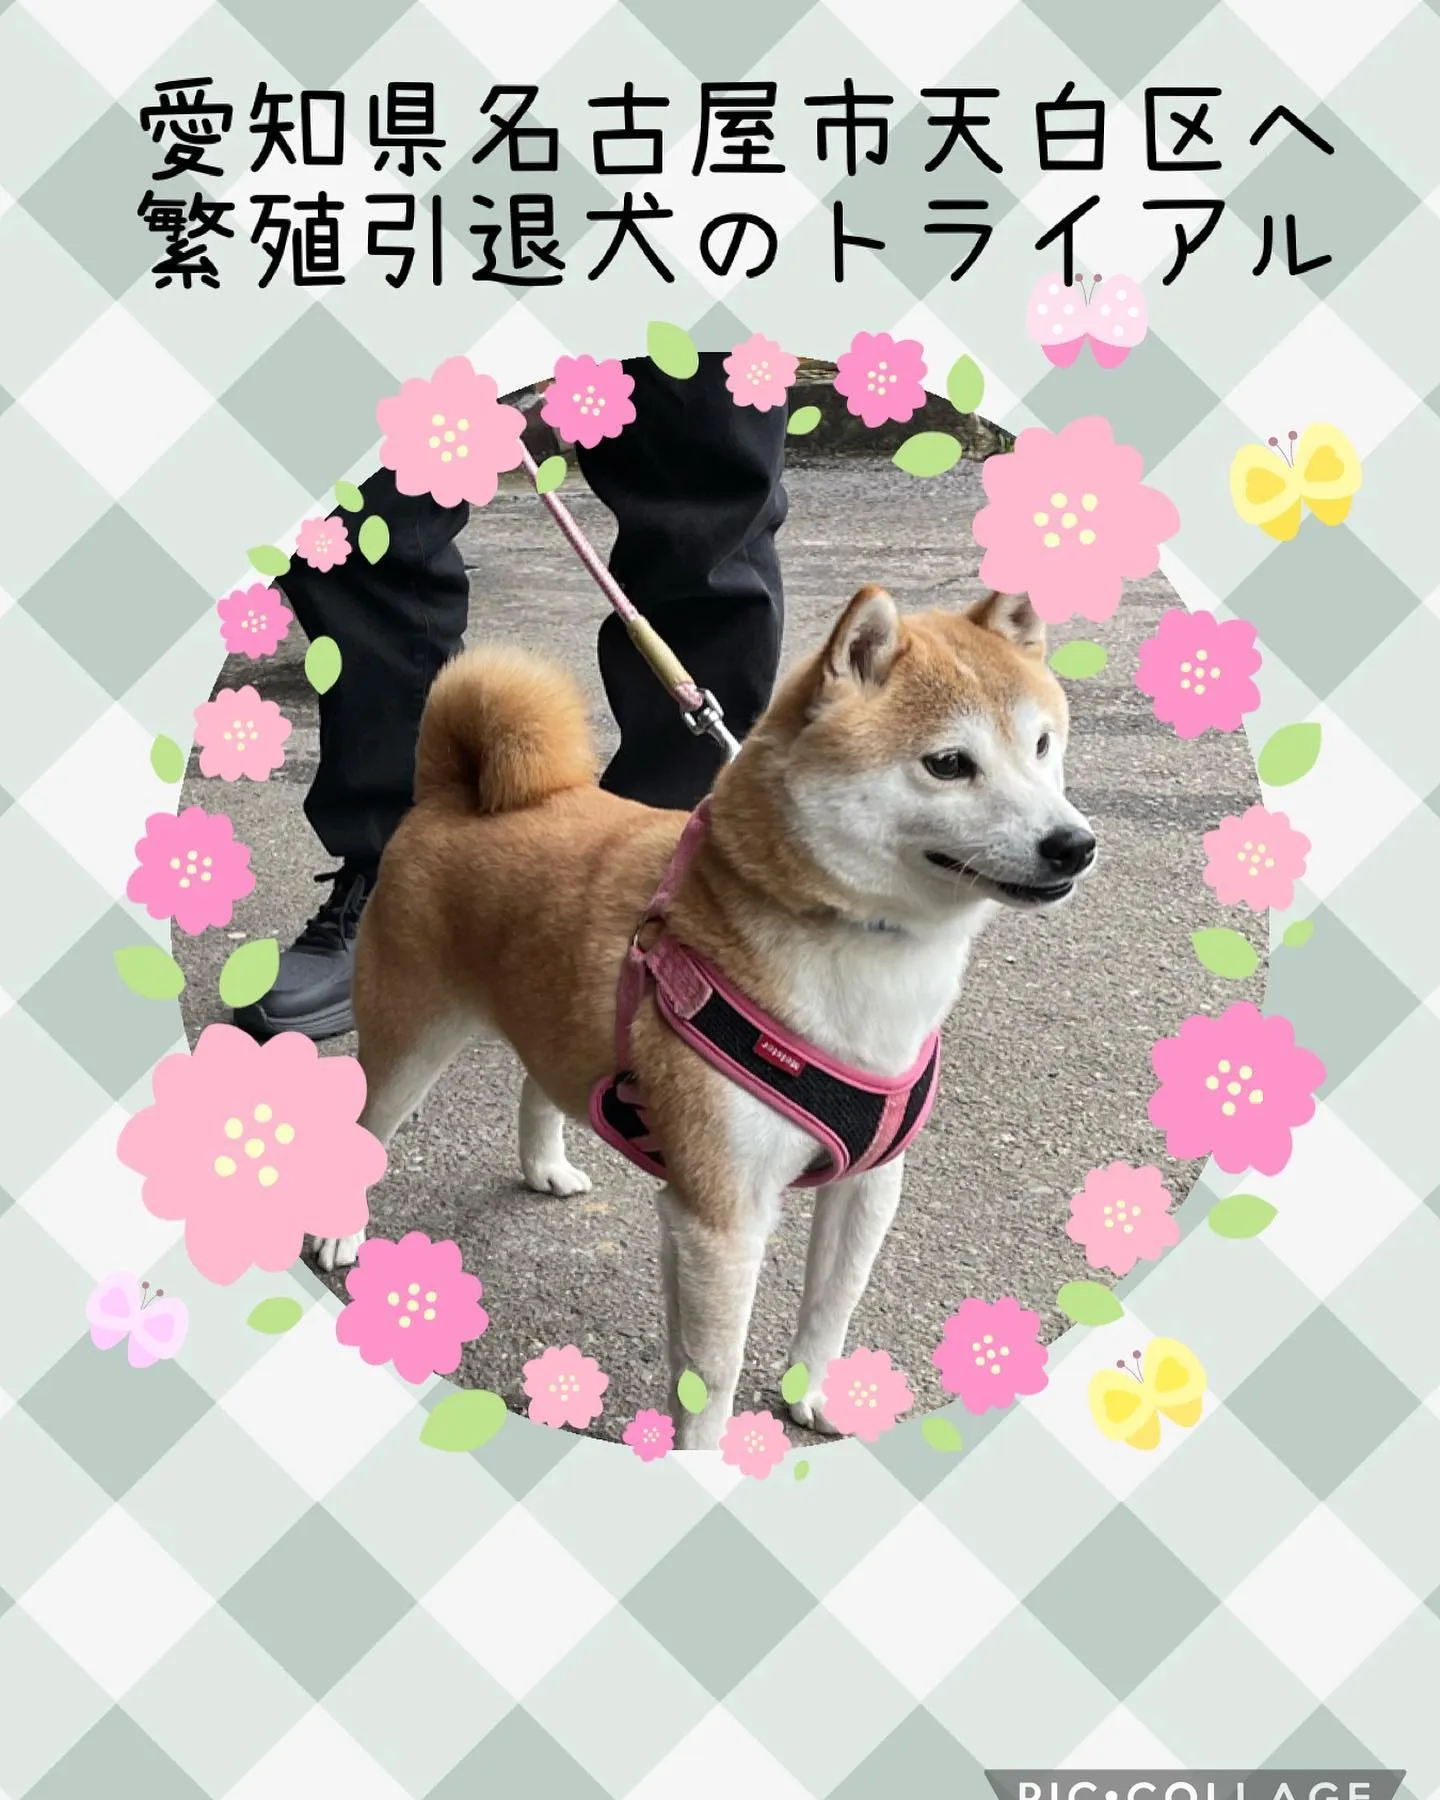 愛知県名古屋市天白区へ繁殖引退犬の柴犬がトライアルに行きまし...